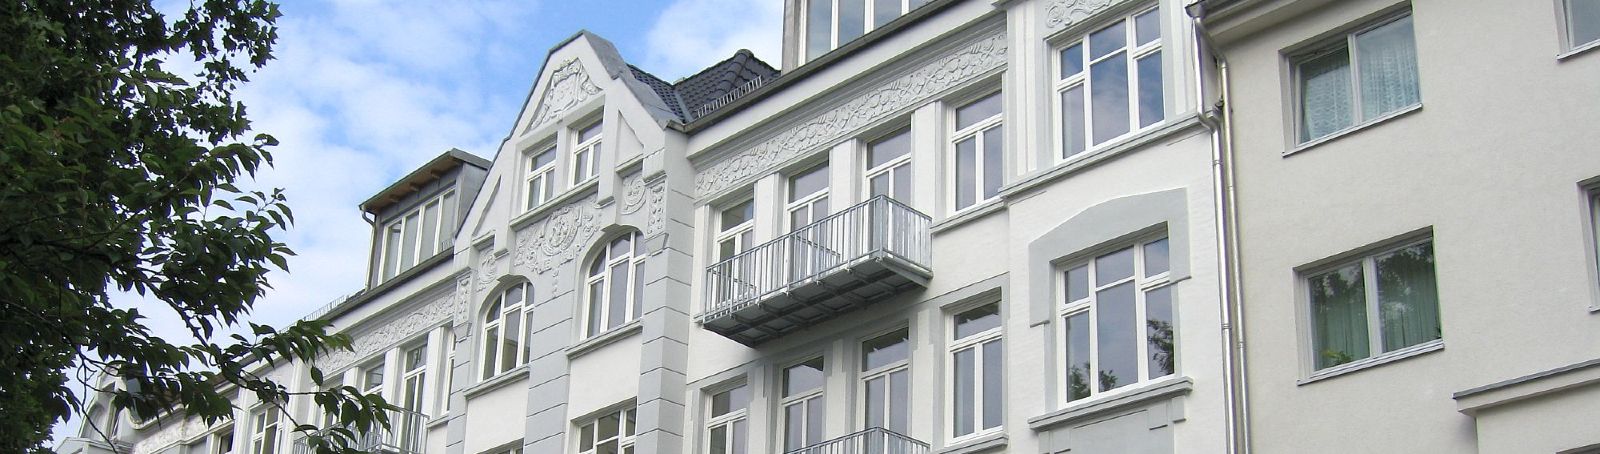 Ansicht der Fassade nach der Sanierung beider Haushälften